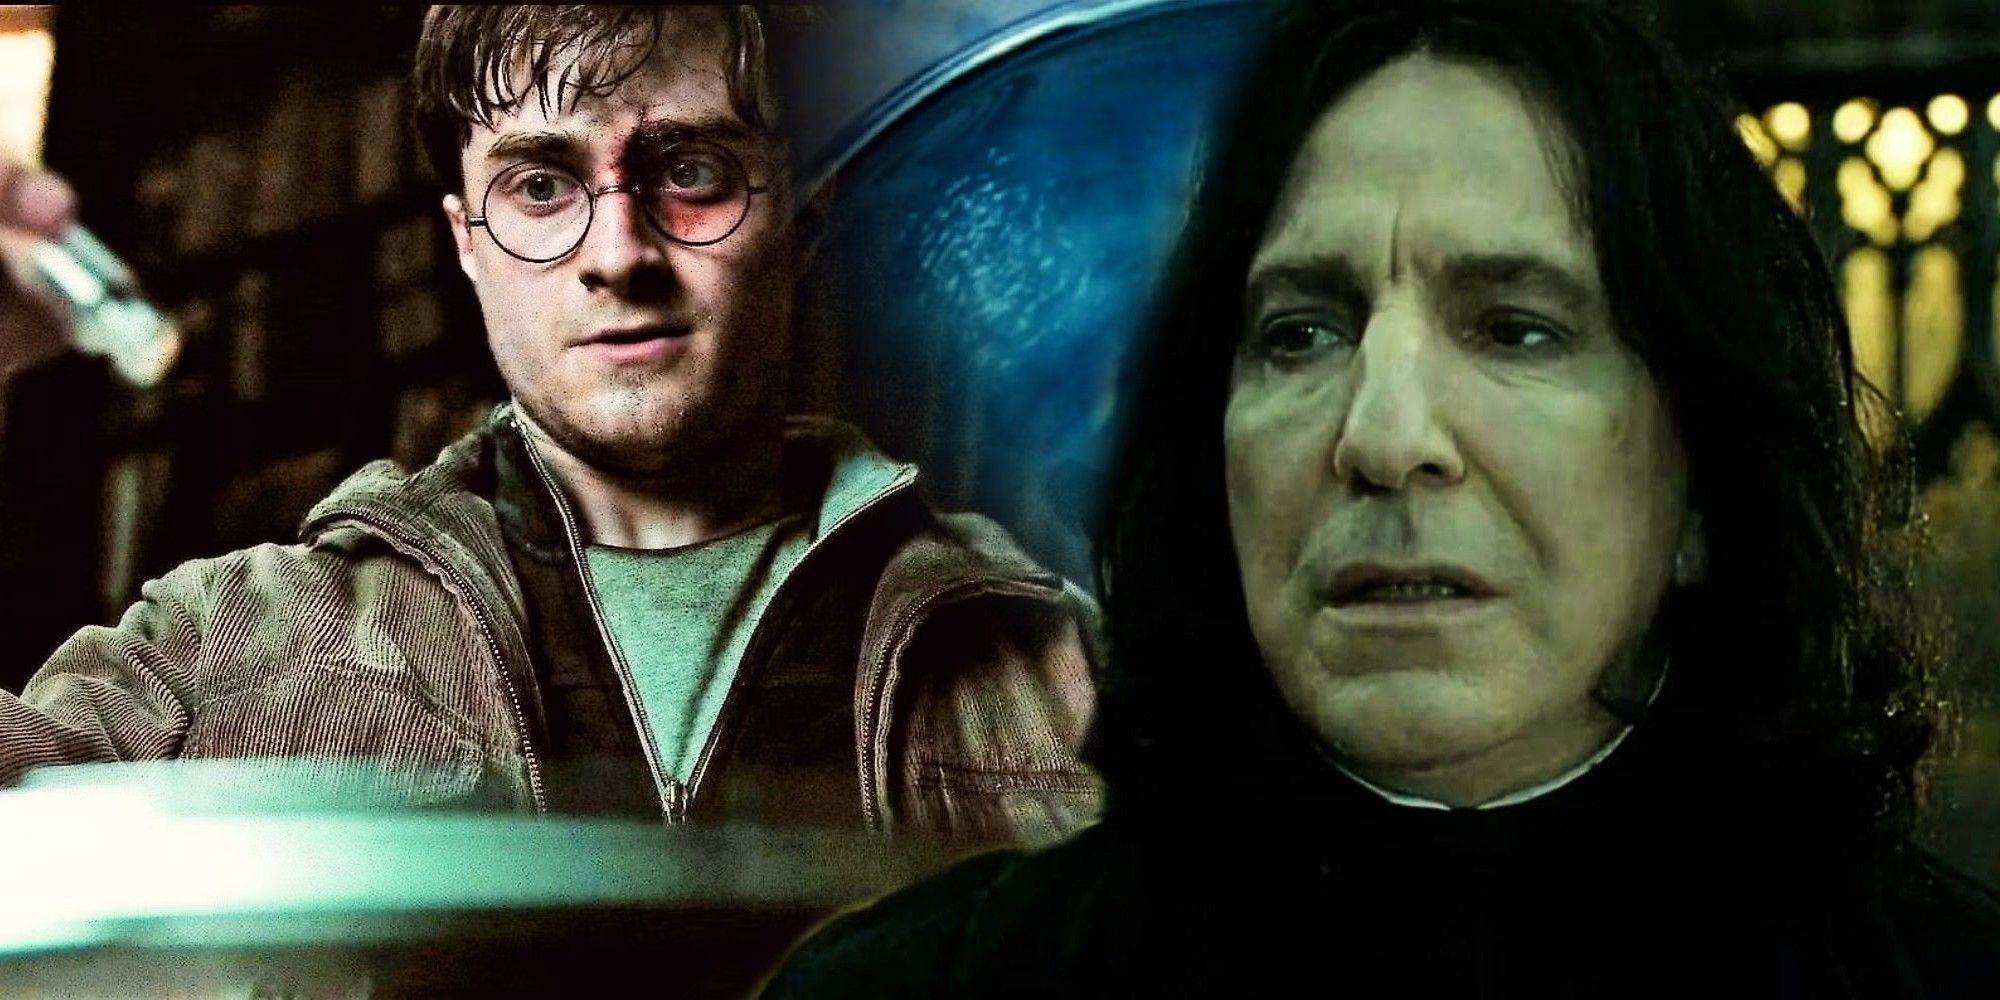 Los recuerdos de Snape en Harry Potter tuvieron un giro más profundo que se ha ignorado durante 16 años